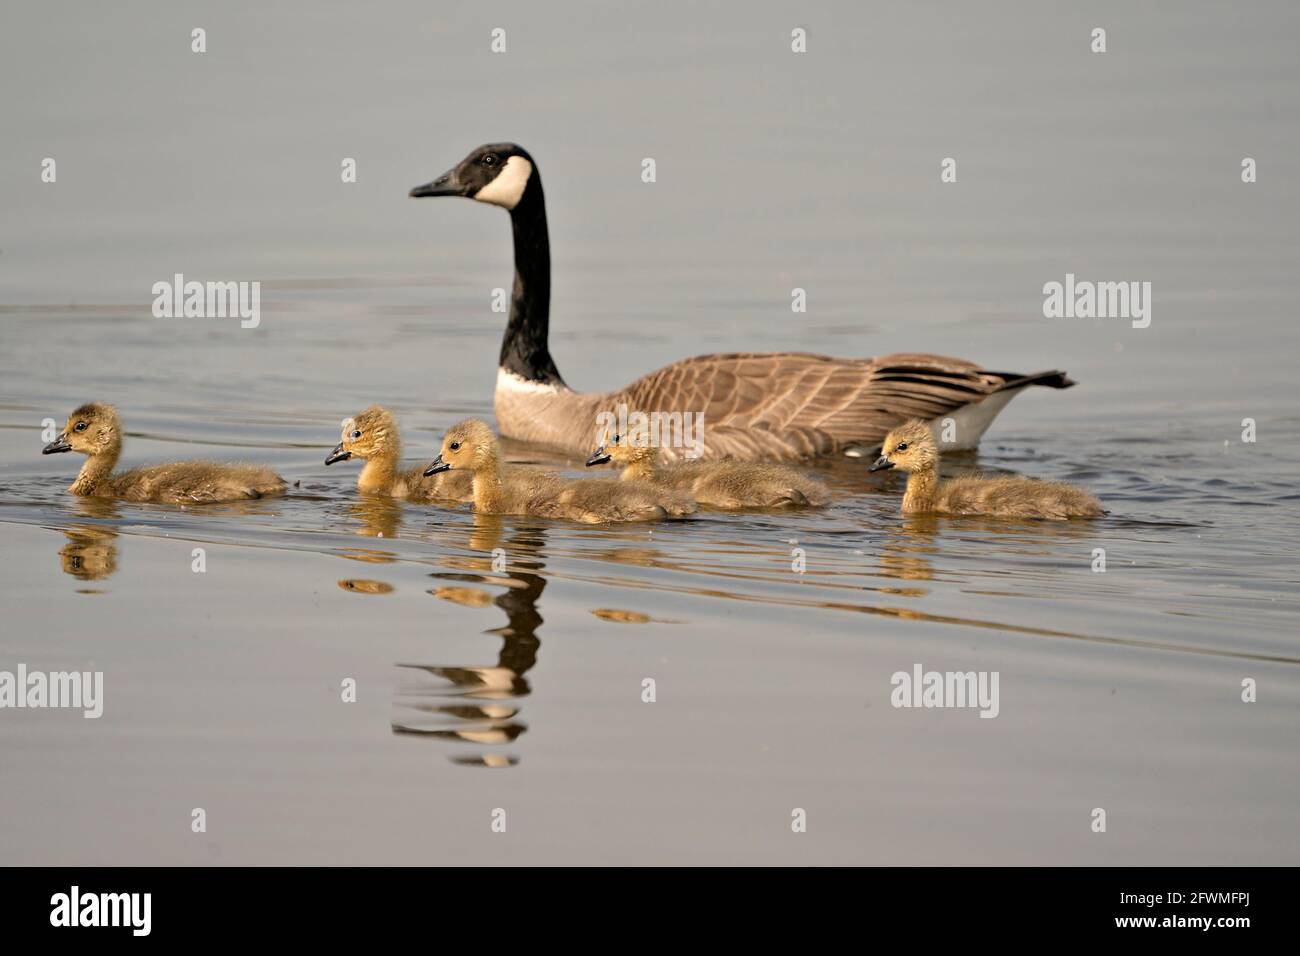 Canadian Goose con bambini gosling nuotare e mostrare le loro ali, testa, collo, becco, piumaggio nel loro ambiente e habitat. Oche del Canada. Foto Stock